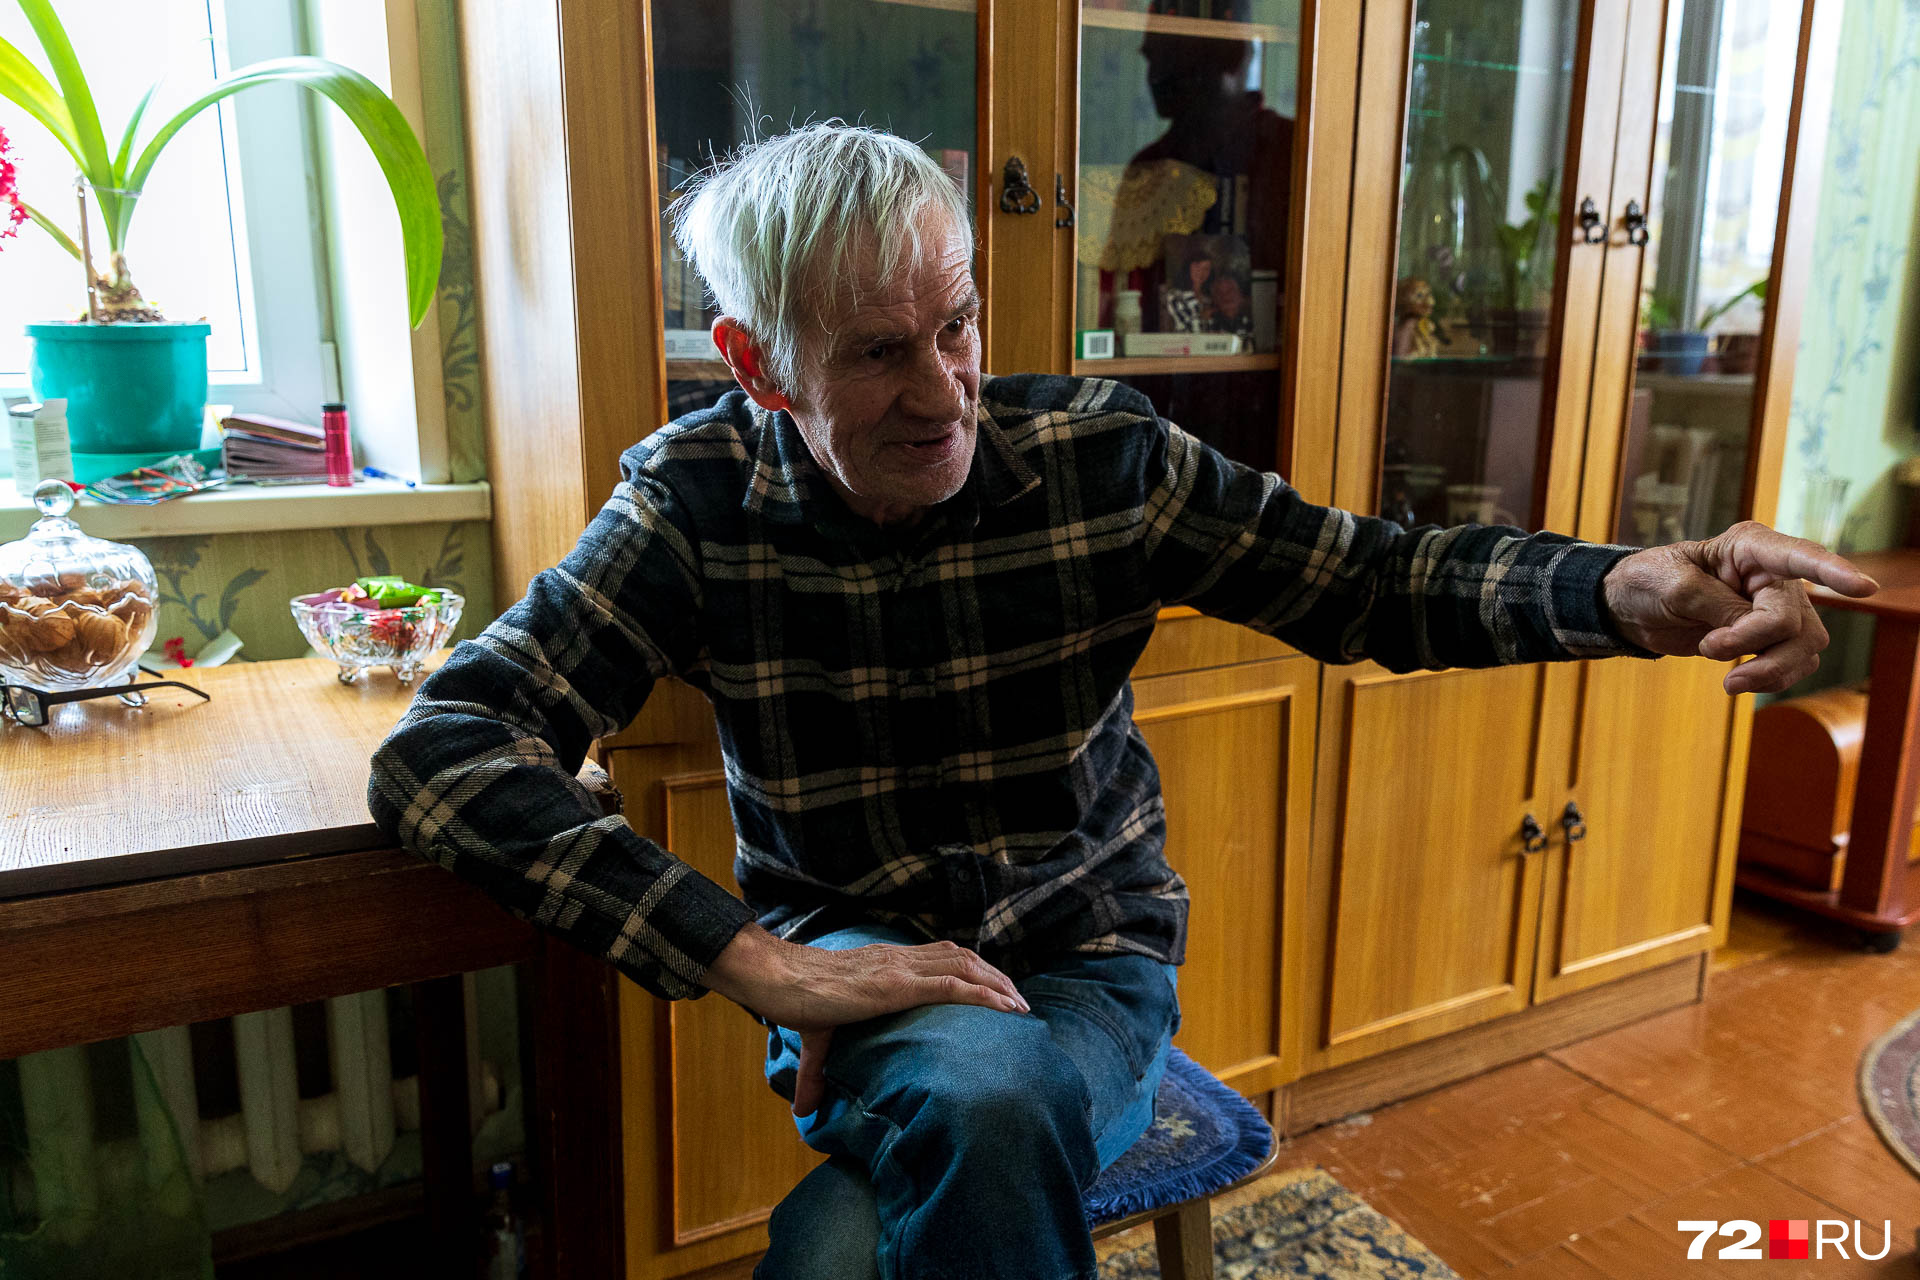 Мы познакомились с Григорием, который живет в Метелево с 1979 года. Он пришел работать на водозабор энергетиком и получил от предприятия квартиру. Мужчина считает, что это хорошо, что район не меняется. Больше всего здесь он любит чистый воздух и вежливых соседей